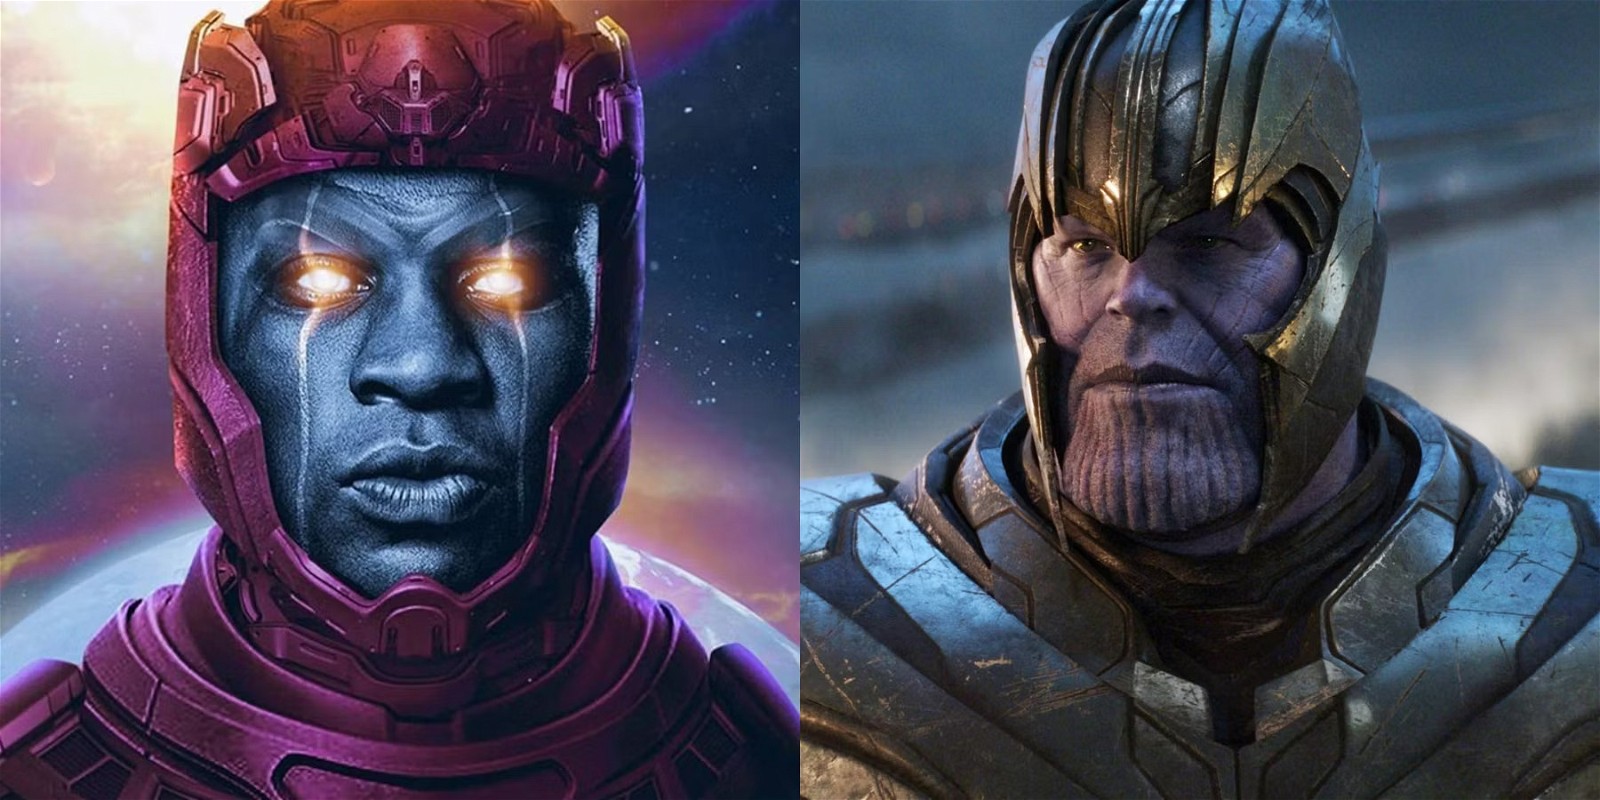 Kang and Thanos